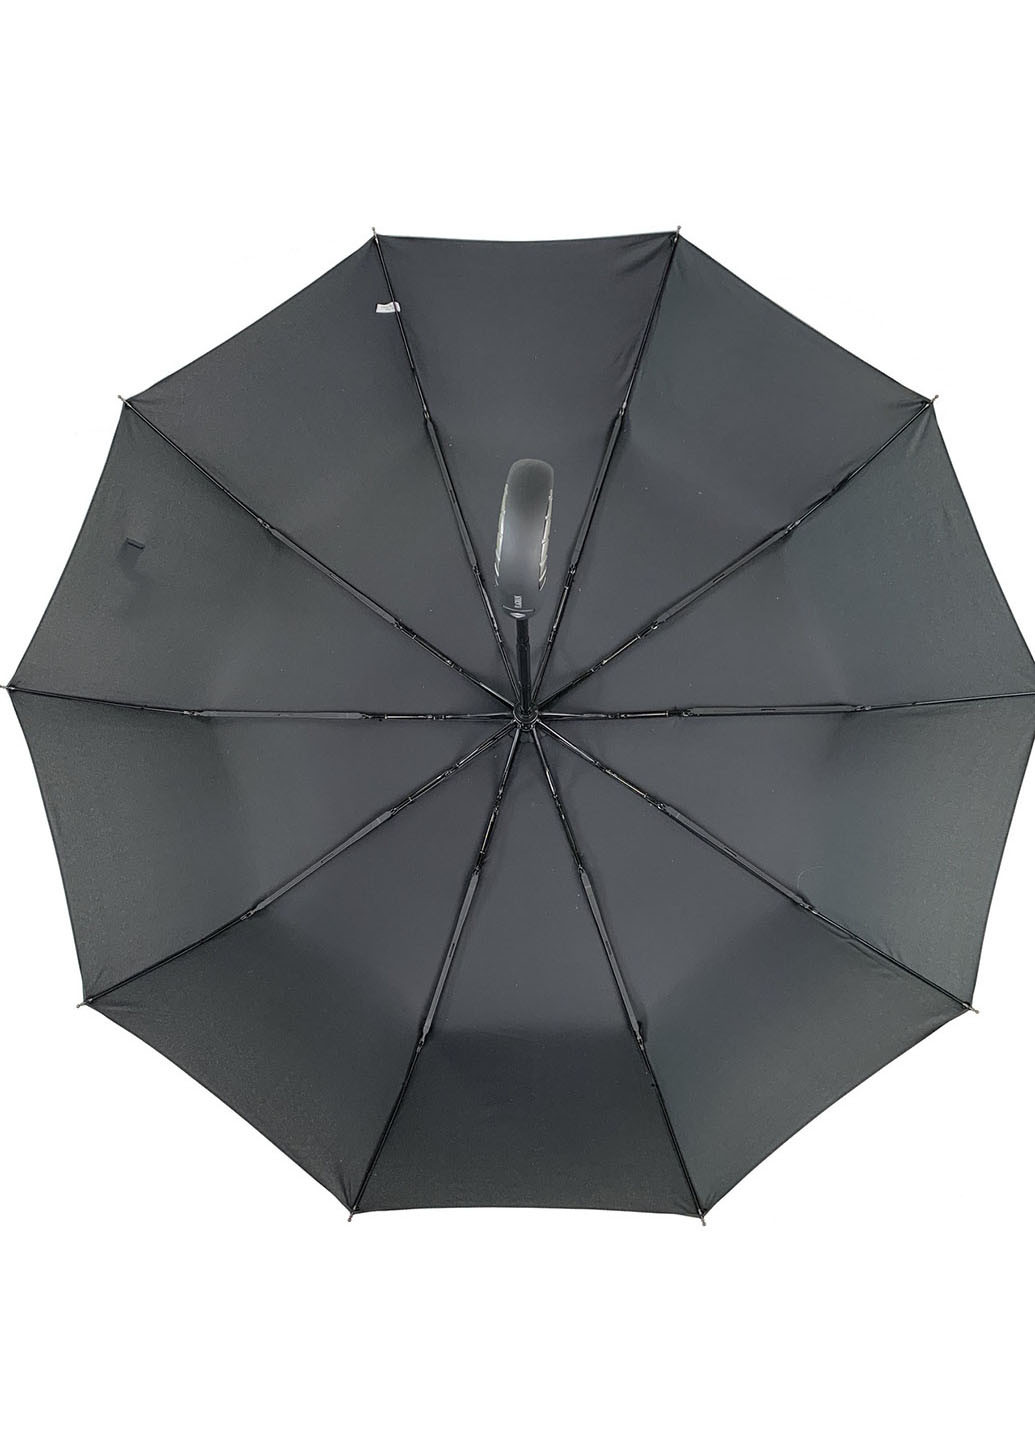 Зонт Flagman 525-1 складной чёрный